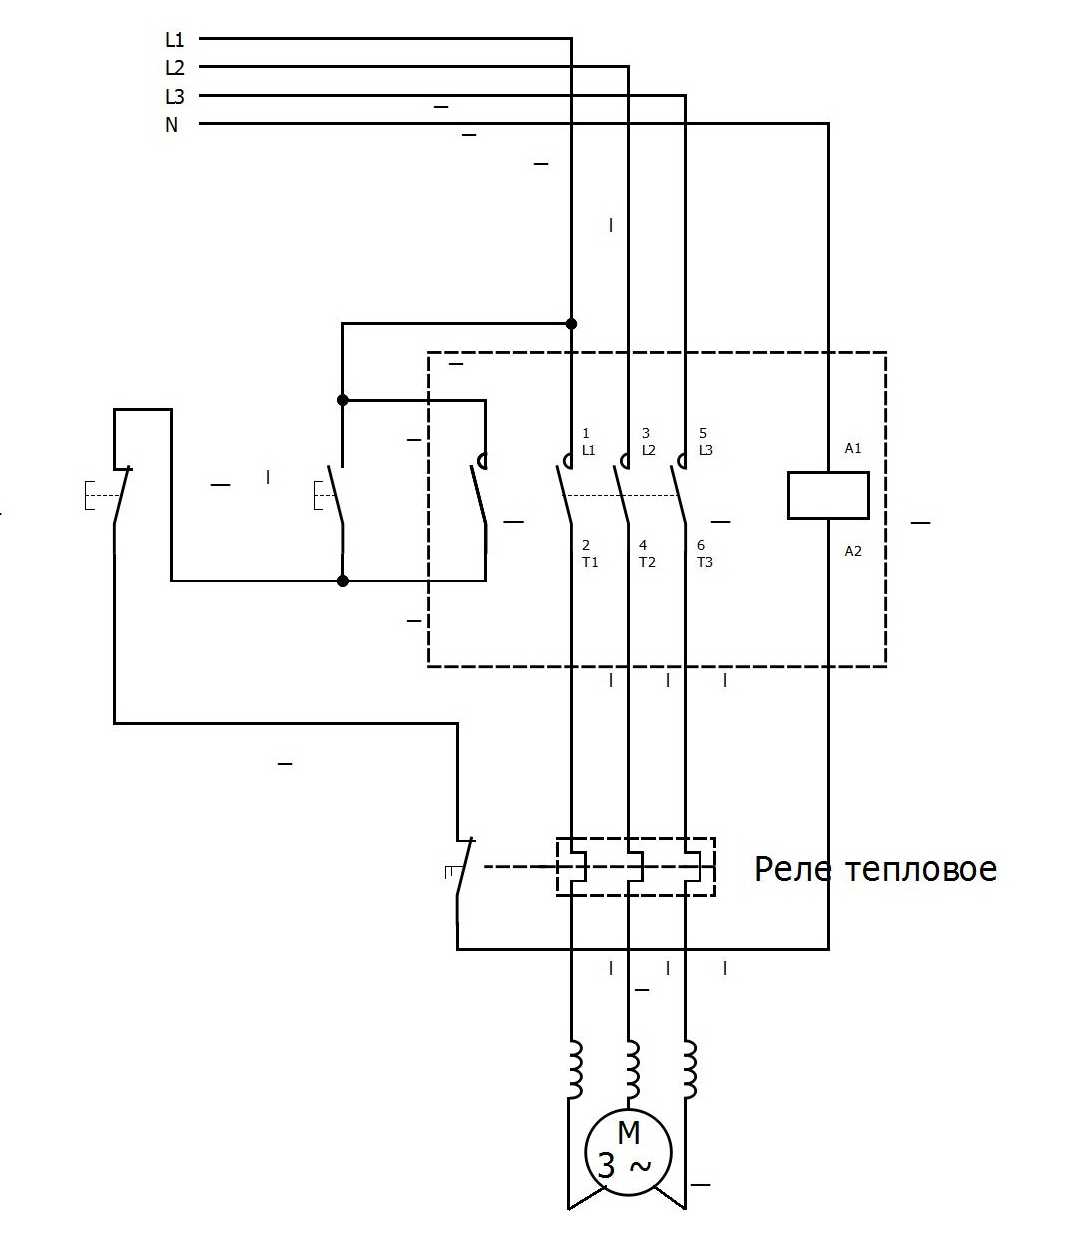 Как проверить тепловое реле электродвигателя. устройства защиты электродвигателей